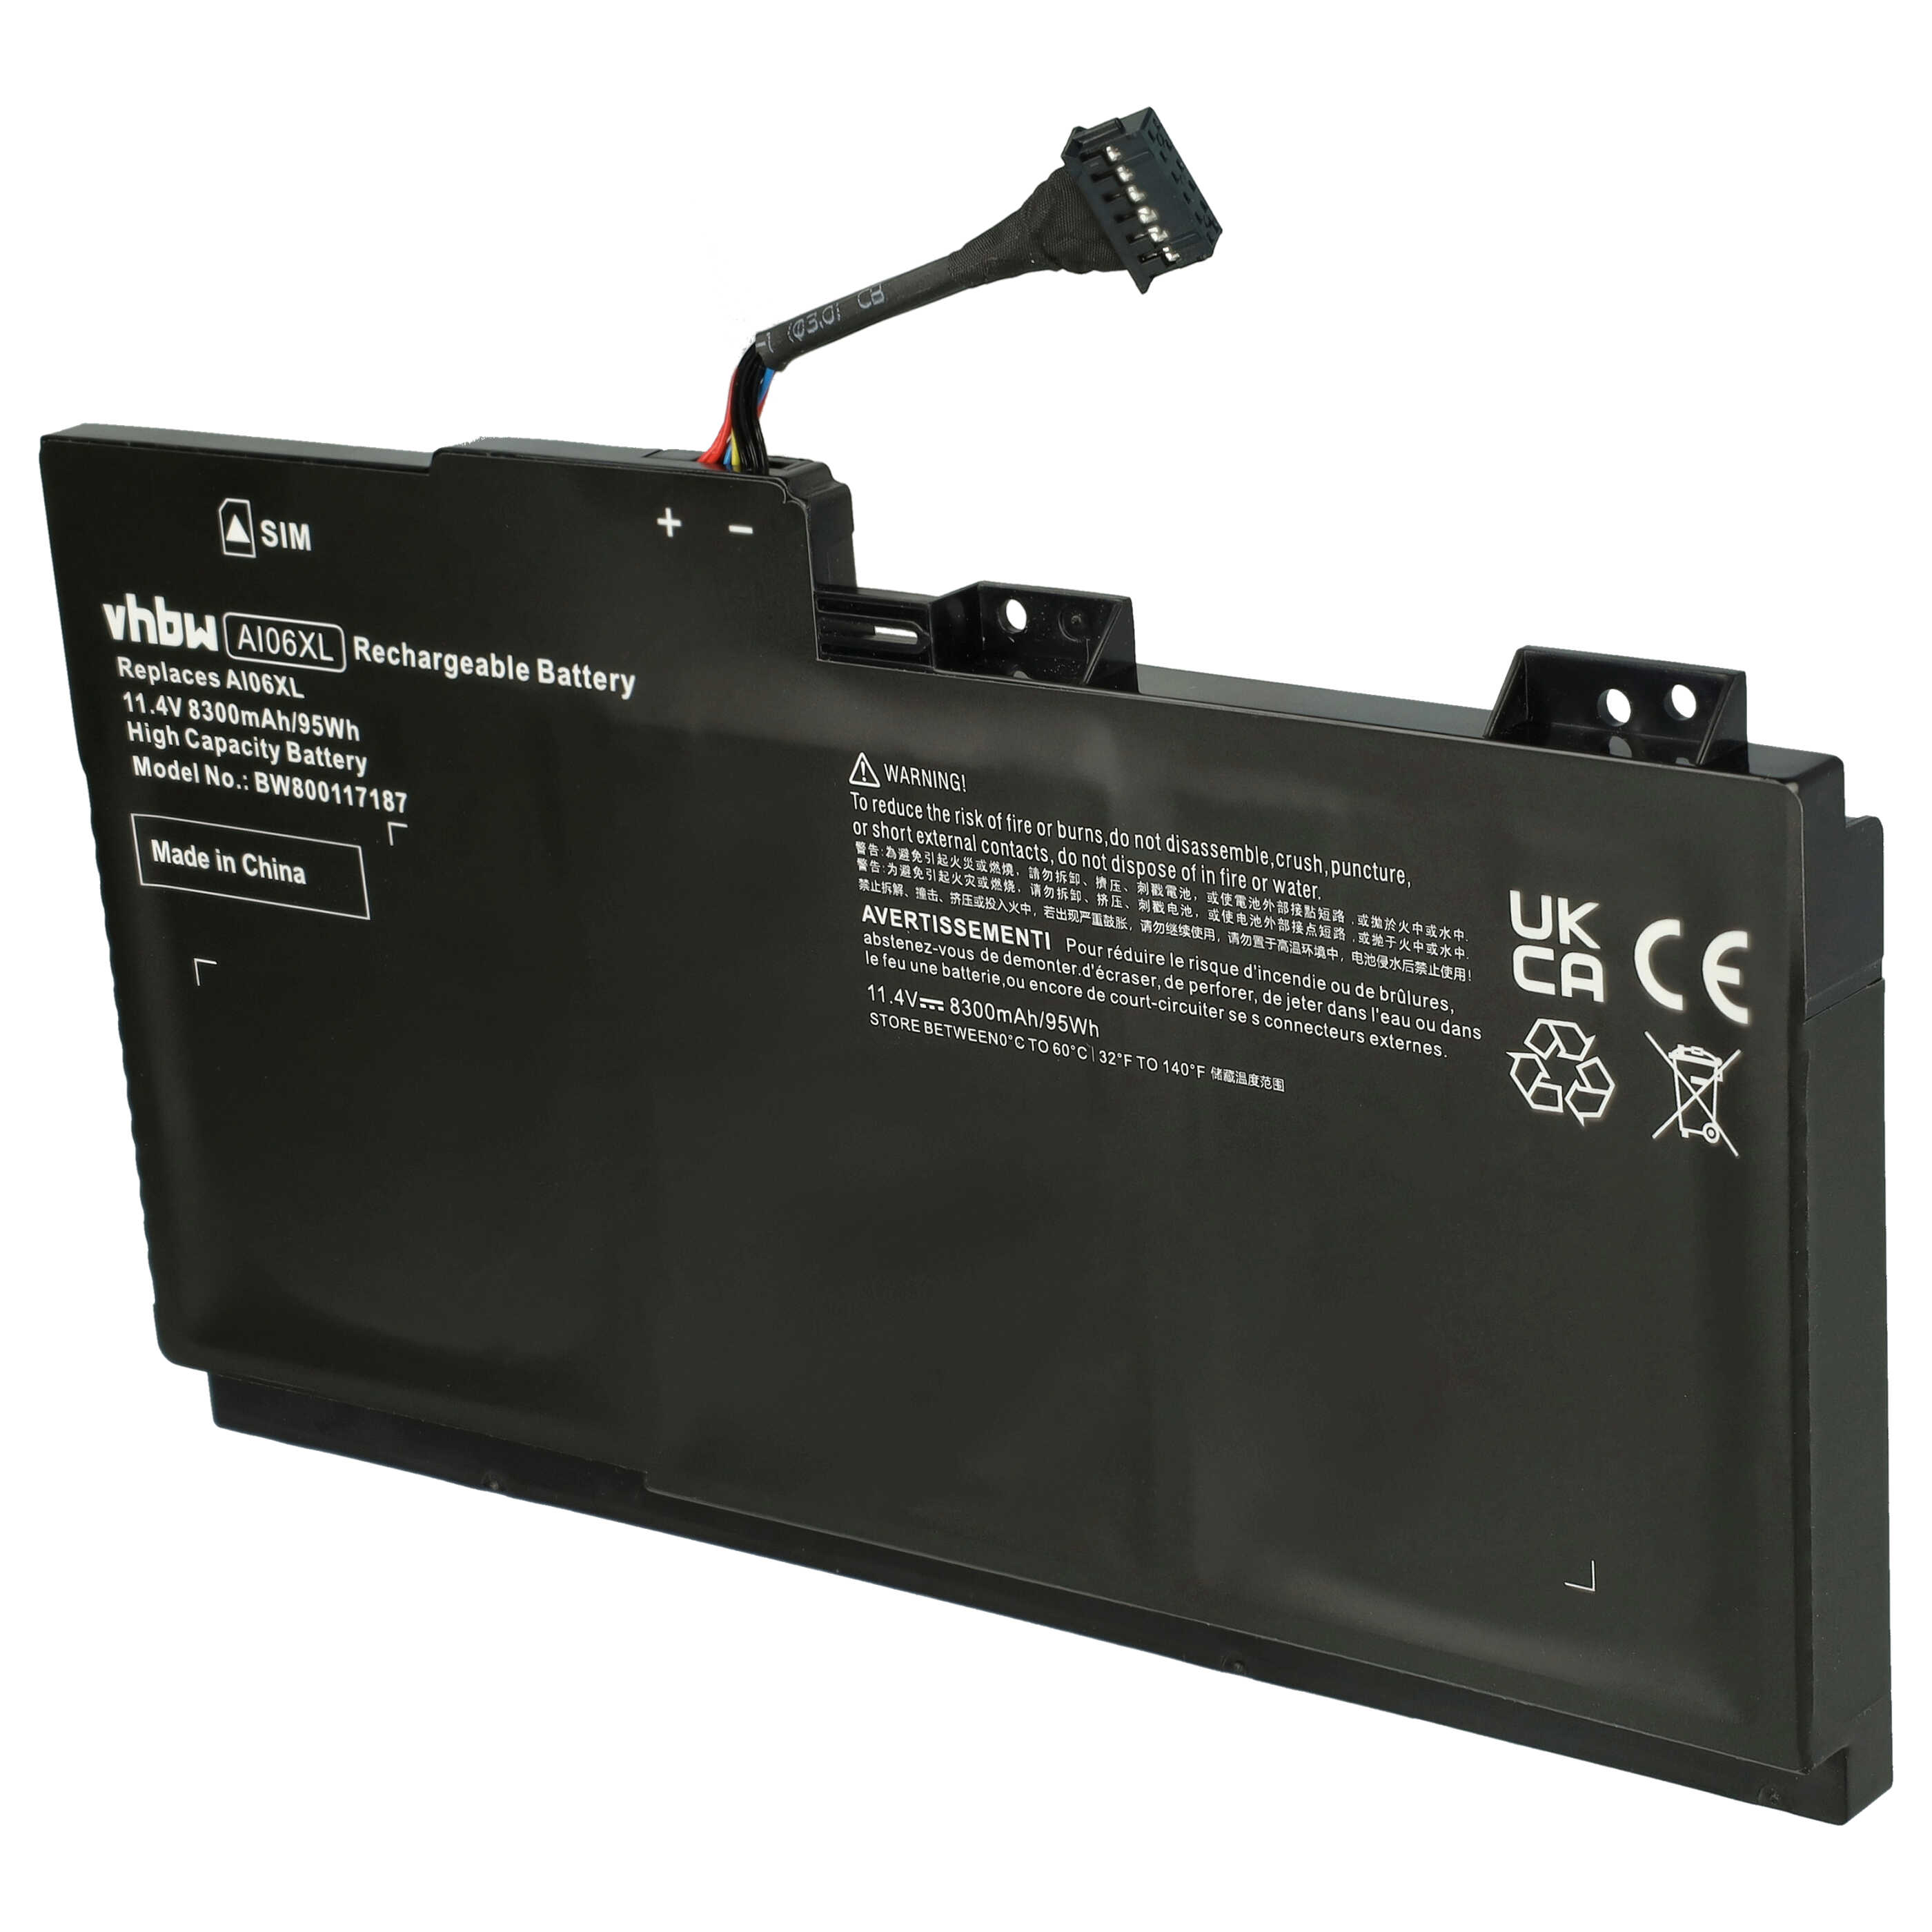 Batteria sostituisce HP HSTNN-C86C, 808451-001, AI06XL, 808397-421 per notebook HP - 8300mAh 11,4V Li-Poly